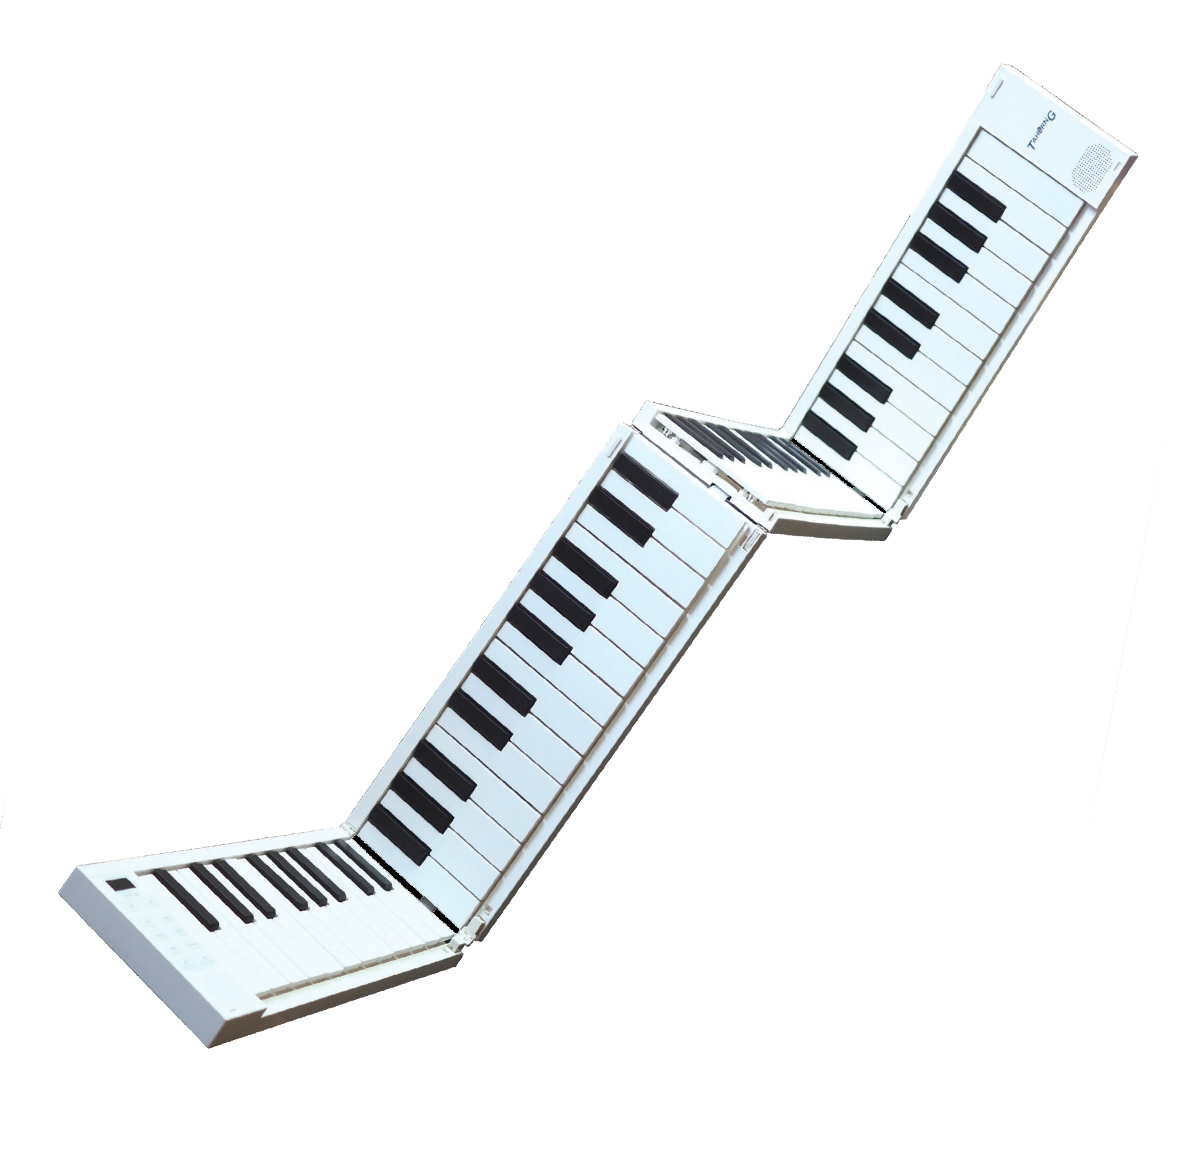 TAHORNG / ORIPIA88 折りたたみ式電子ピアノ/MIDIキーボード オリピア OP88